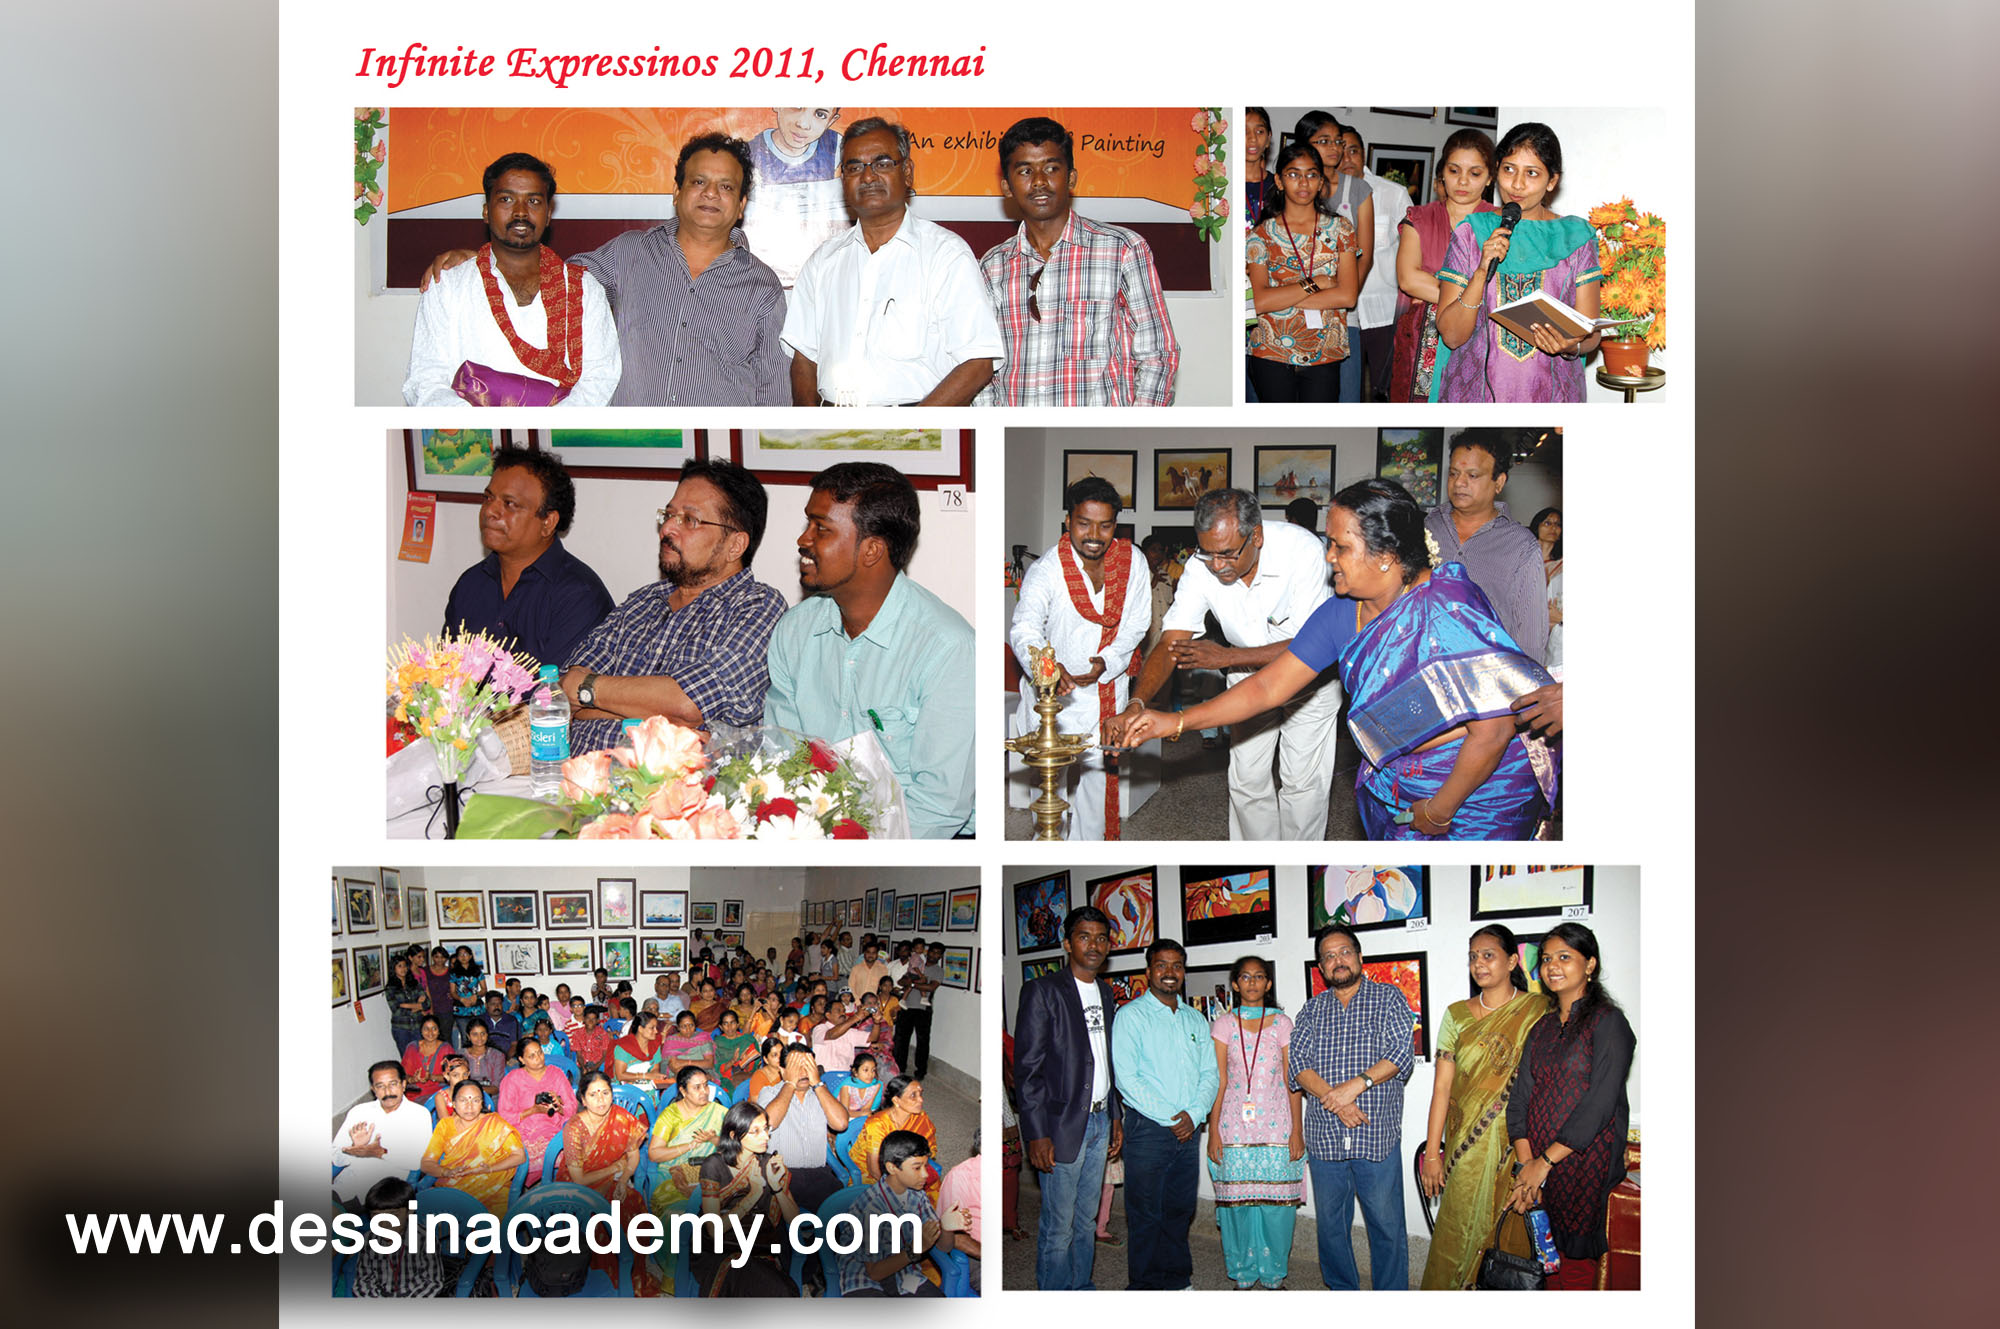 Dessin School of arts Event Gallery 5, Painting classes in VelacheryDessin School of Arts